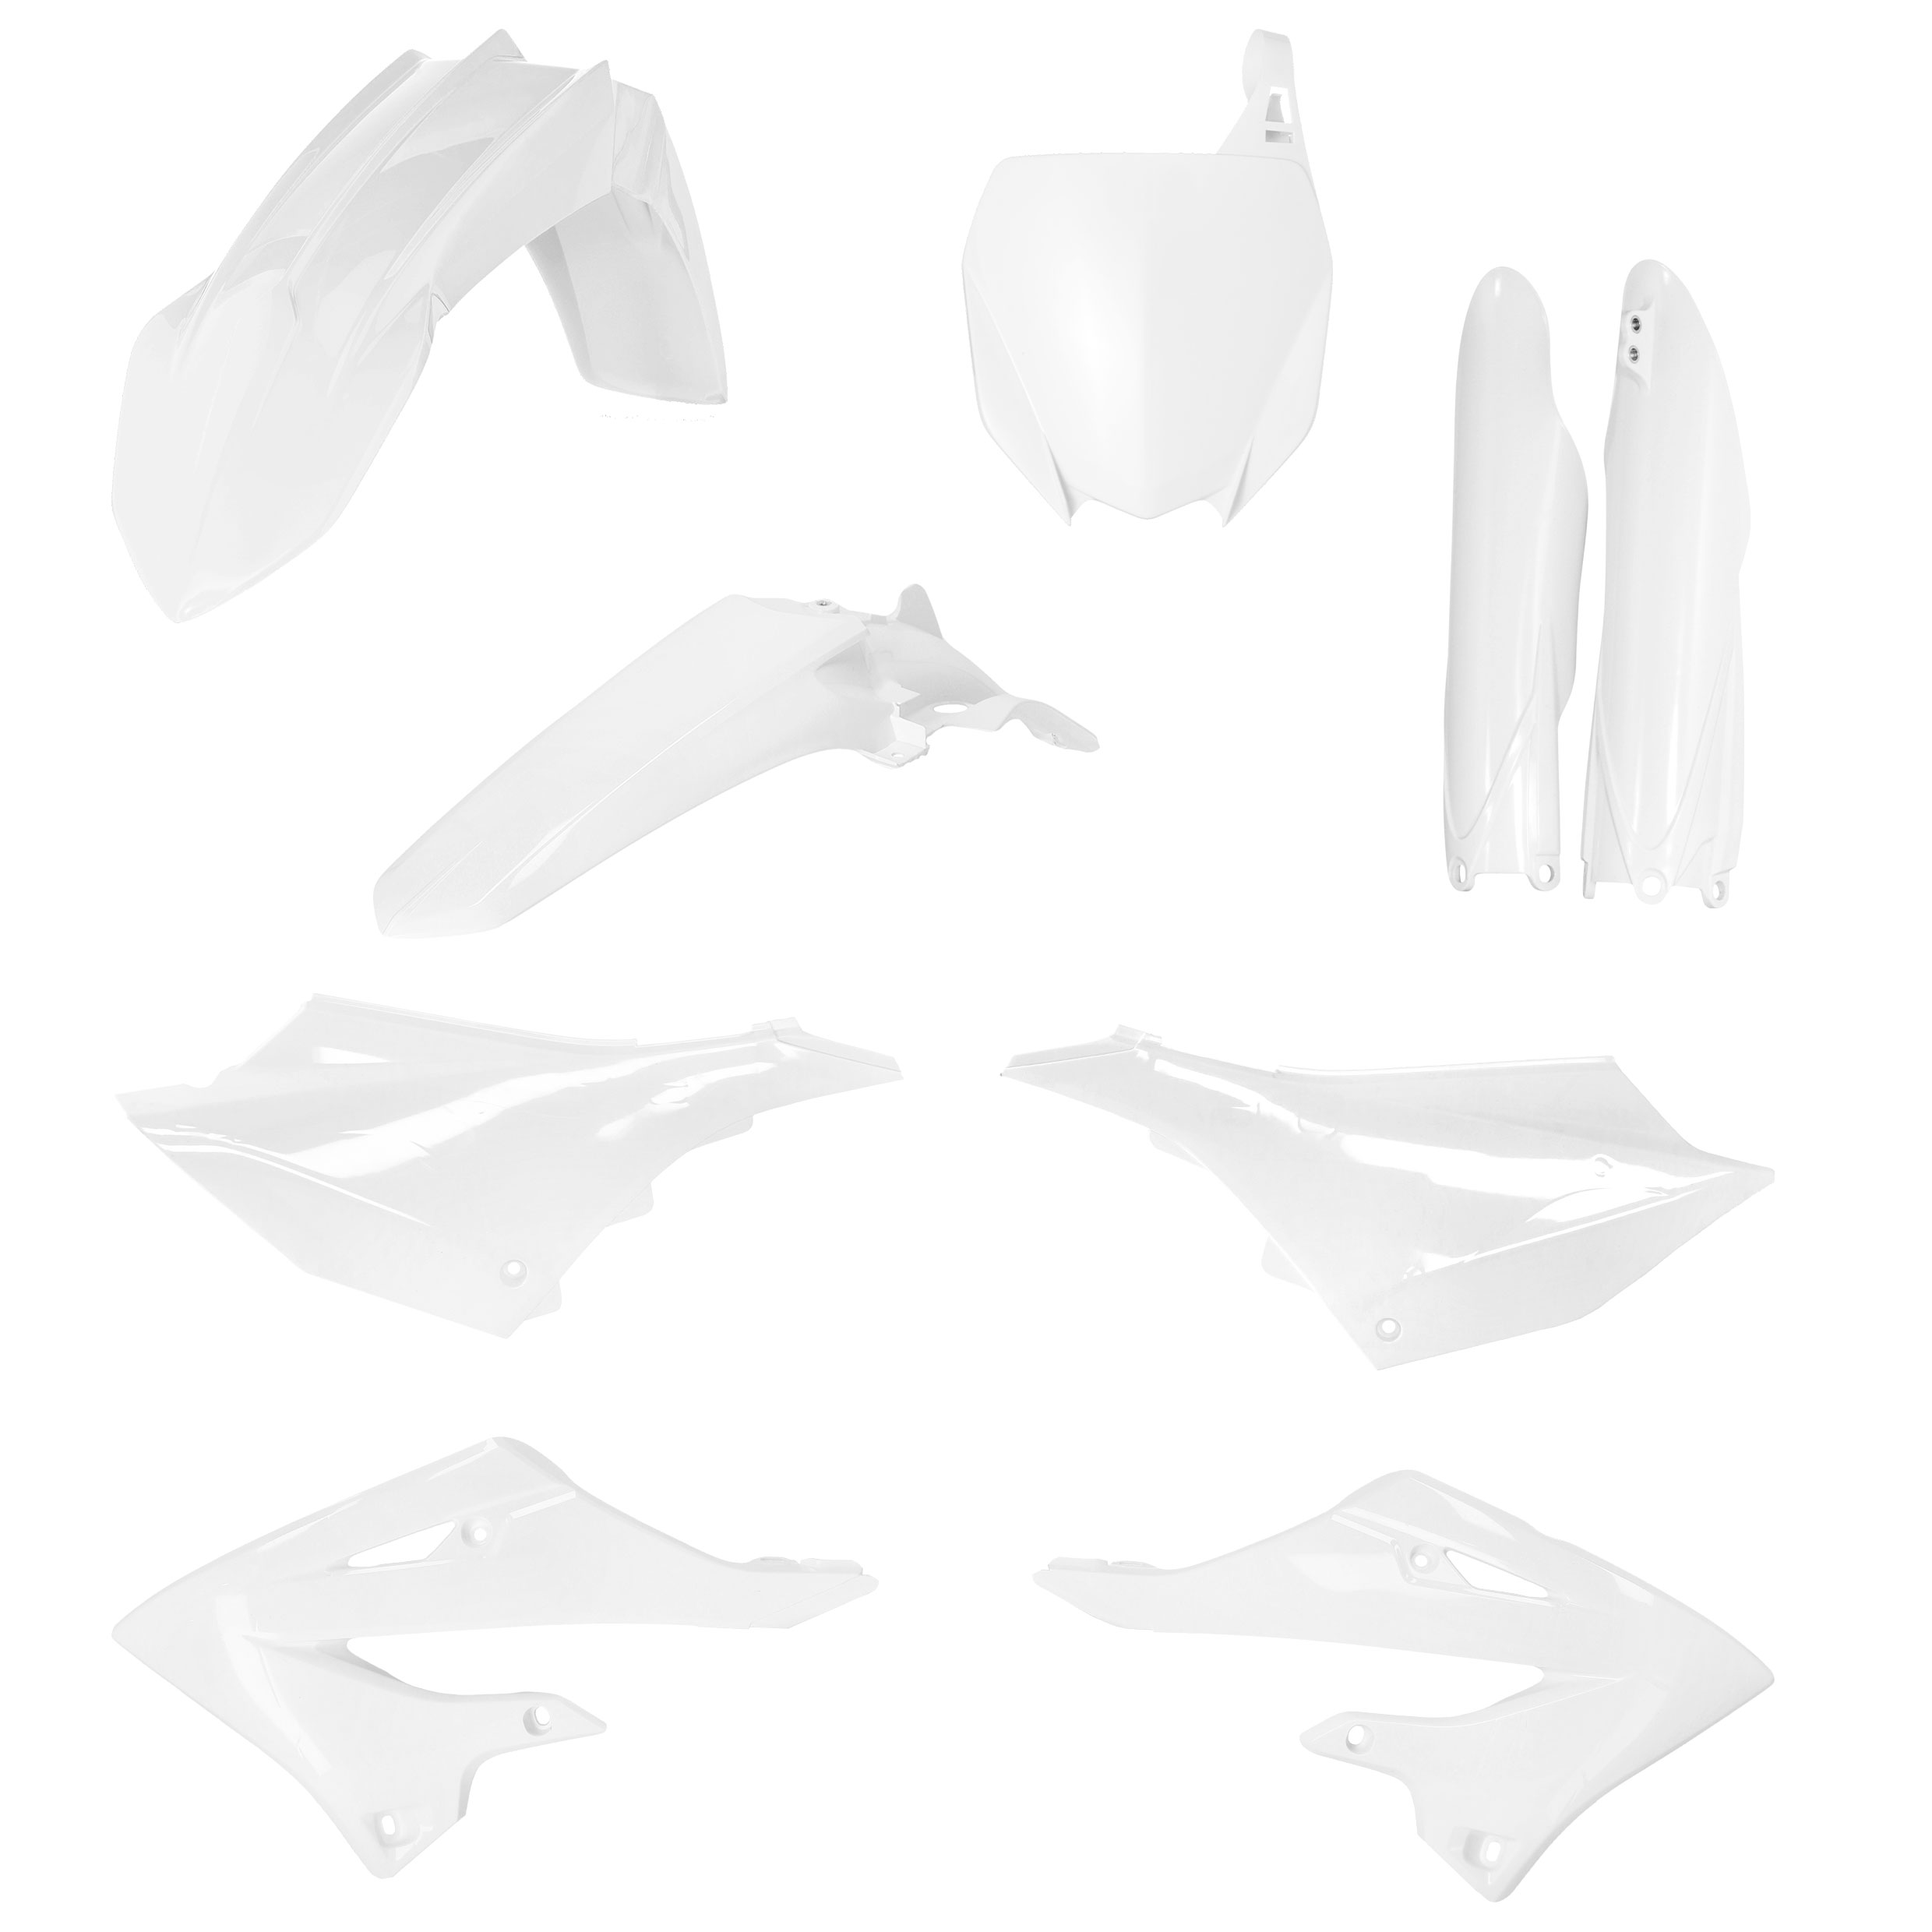 Plastikteile für deine Yamaha YZ 125/250 in weiß bestehend aus Kotflügel vorn Kotflügel hinten Kühlerspoiler Seitenteile Gabelschützer Startnummerntafel